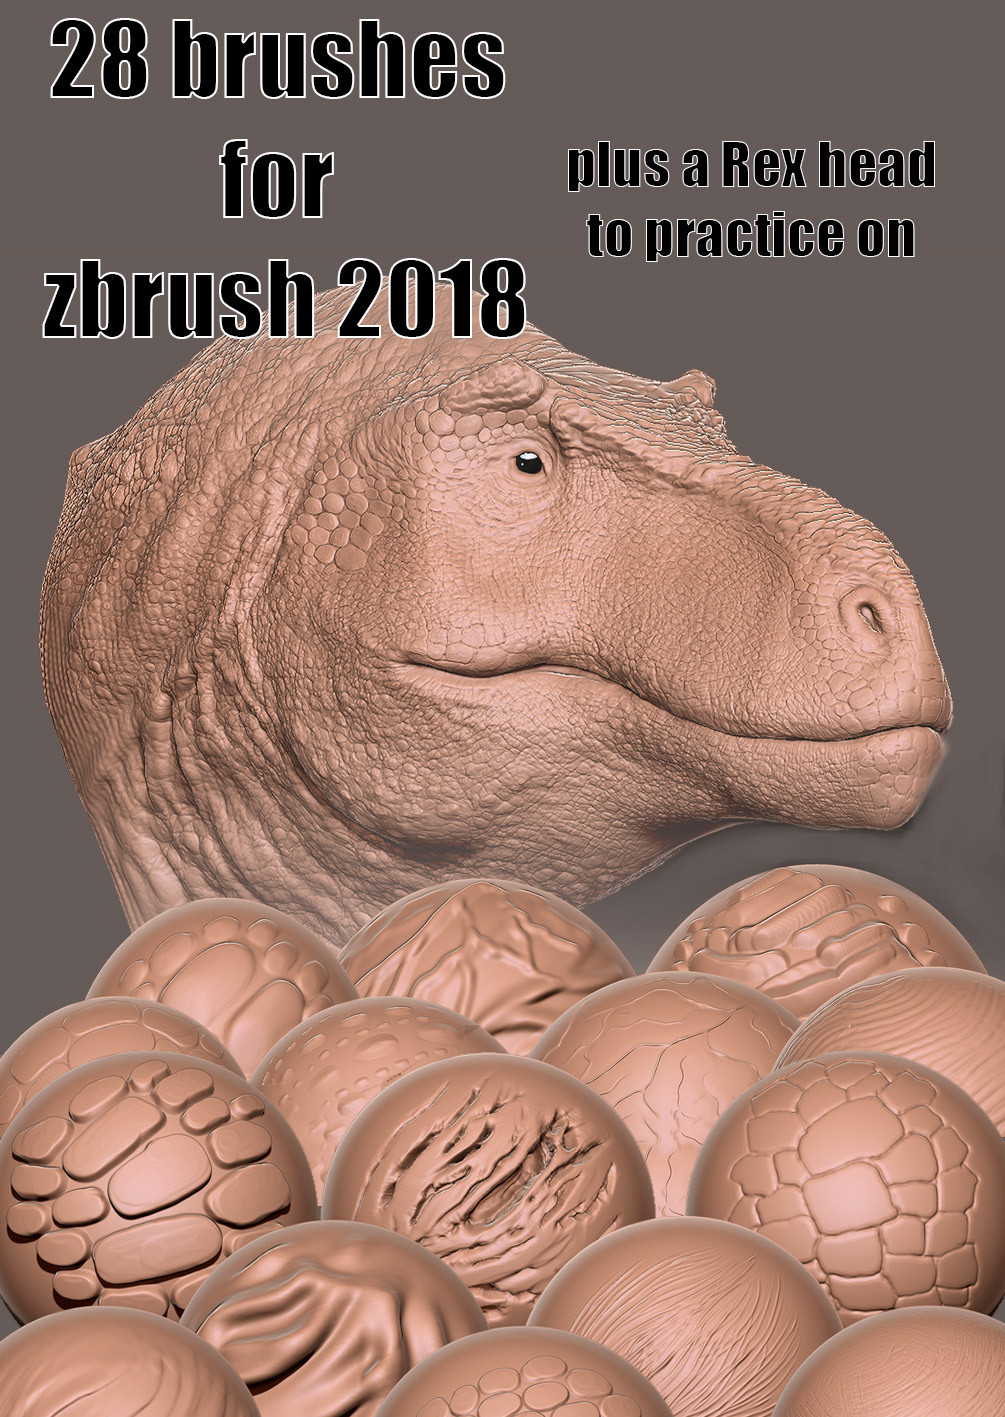 zbrush 2018 painting